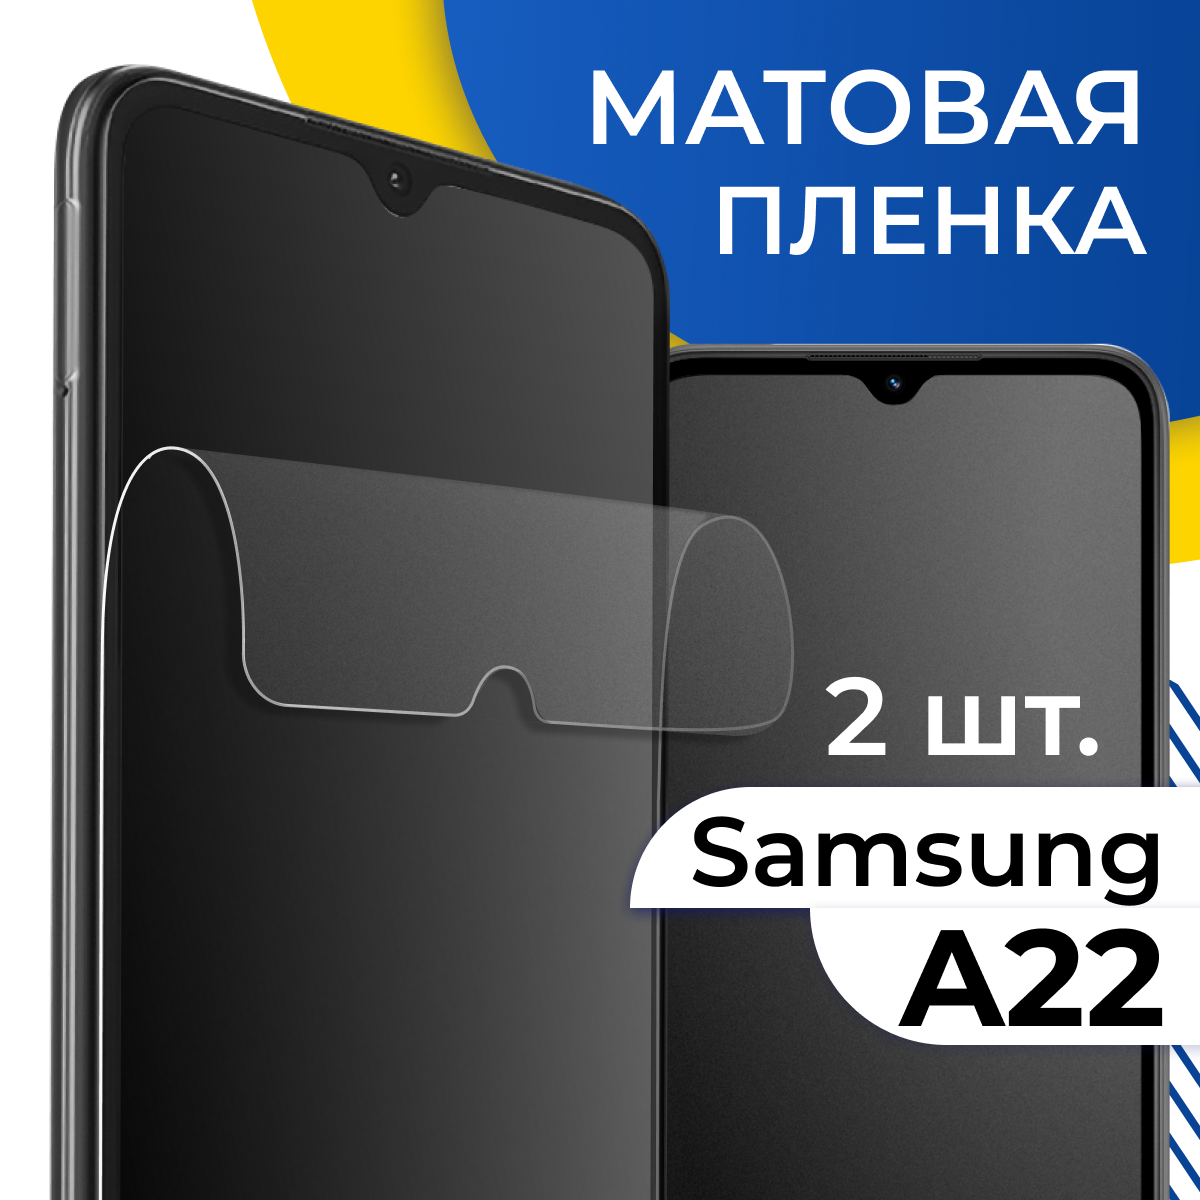 Матовая гидрогелевая пленка для телефона Samsung Galaxy A22 / Самовосстанавливающаяся защитная пленка на смартфон Самсунг Галакси А22 / Противоударная